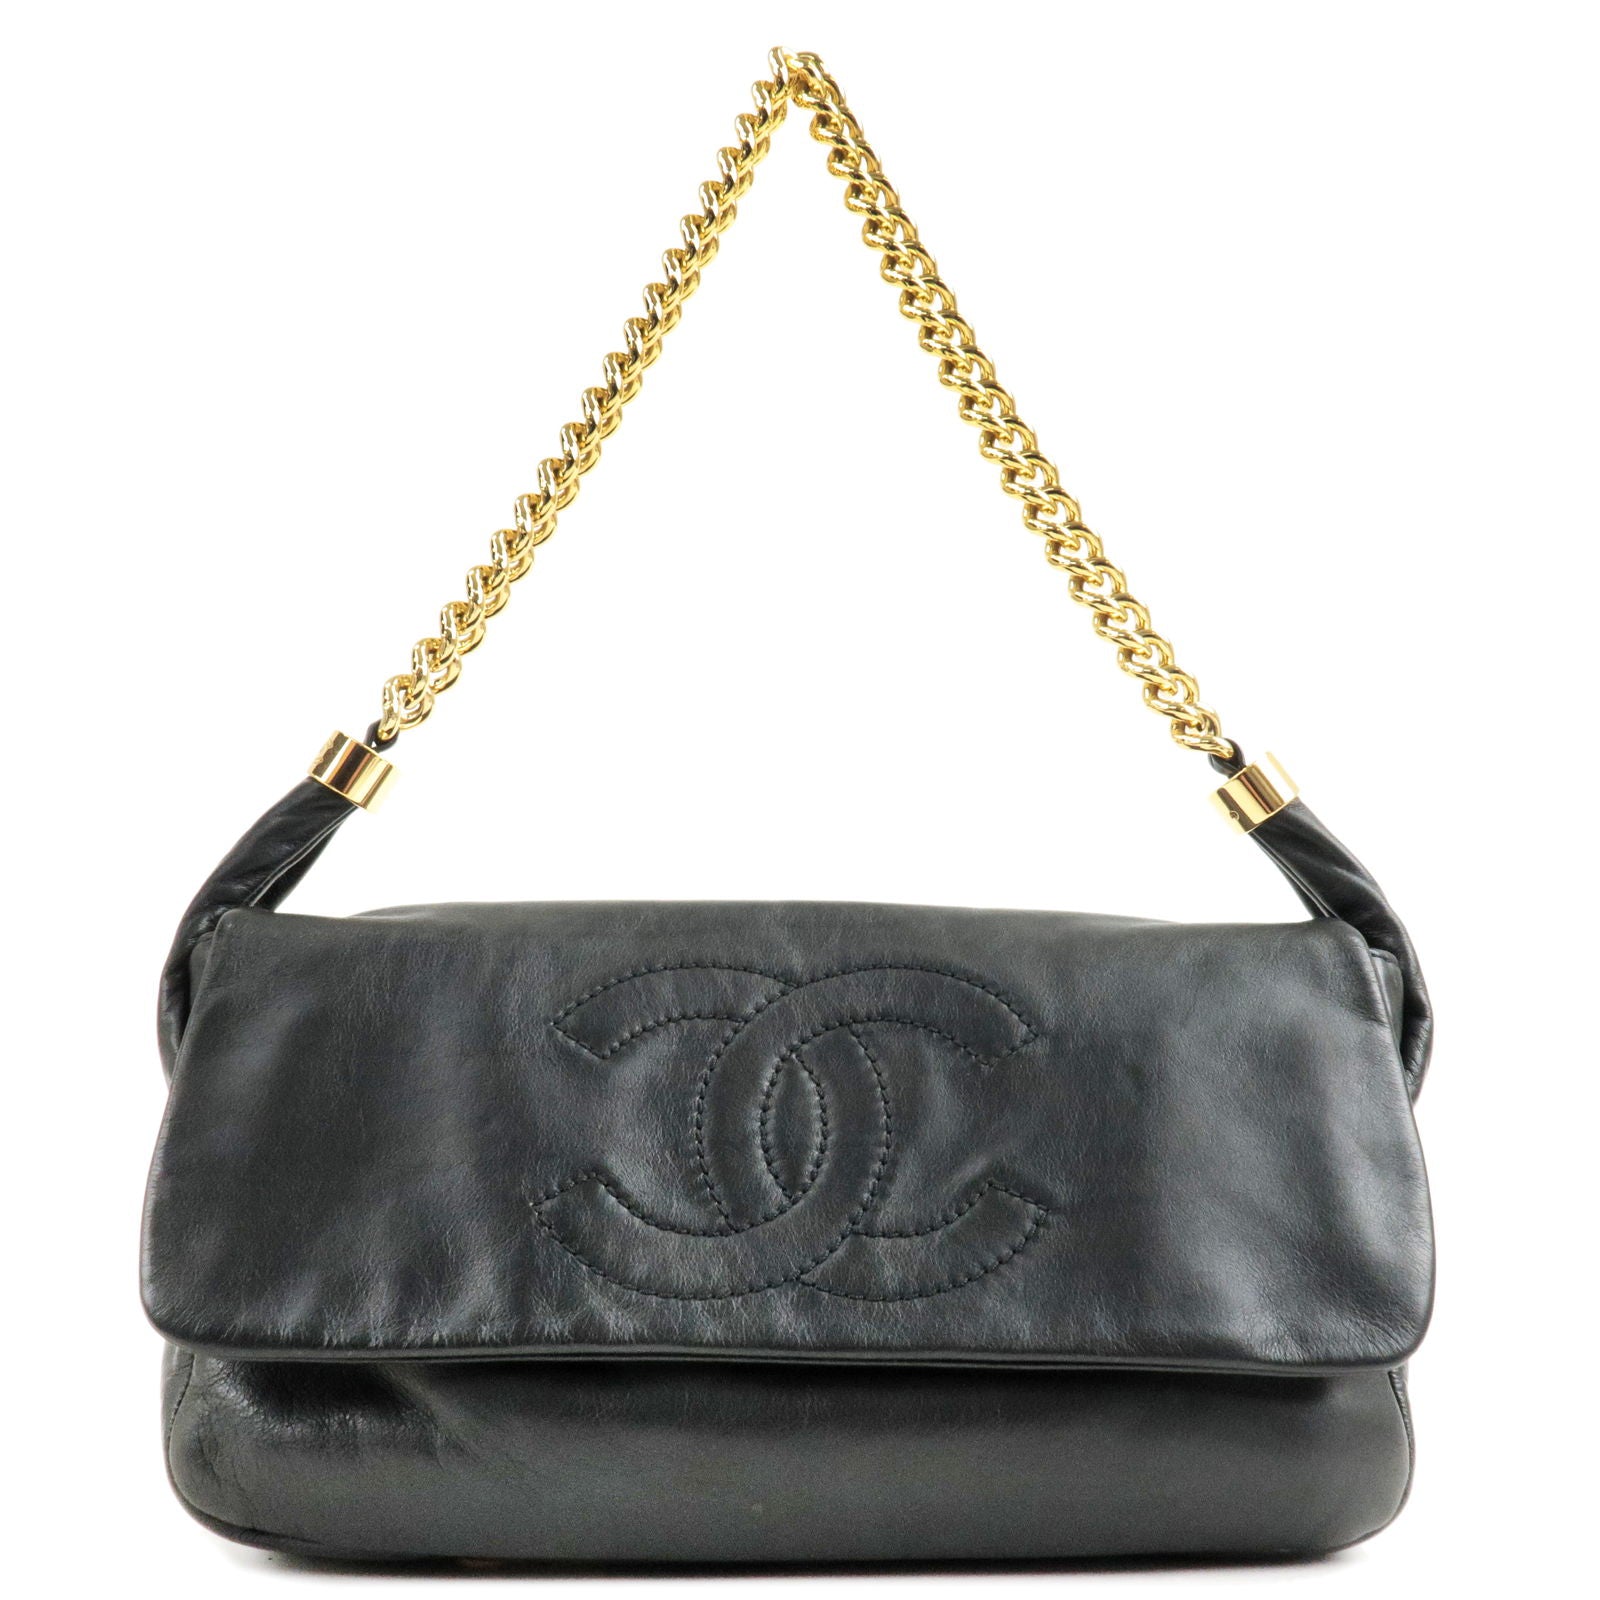 Chanel Bag Matelasse Ladies Handbag Shoulder 2way Tote Caviar Skin